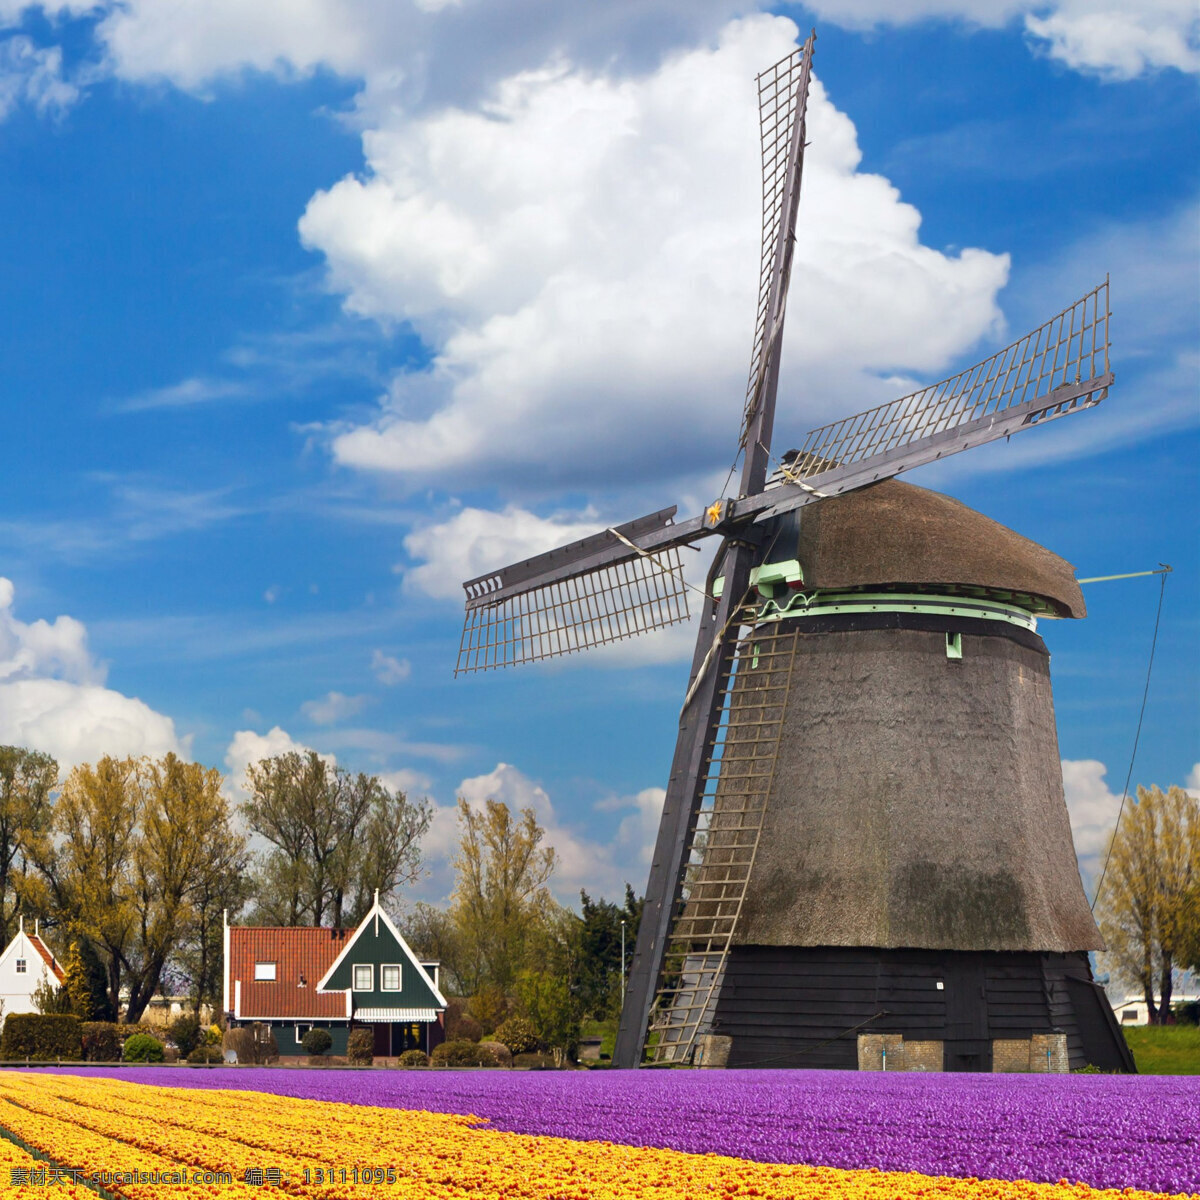 唯美风车 风车 荷兰花海 风景图 背景 蓝天 风车景观 旅游摄影 国外旅游